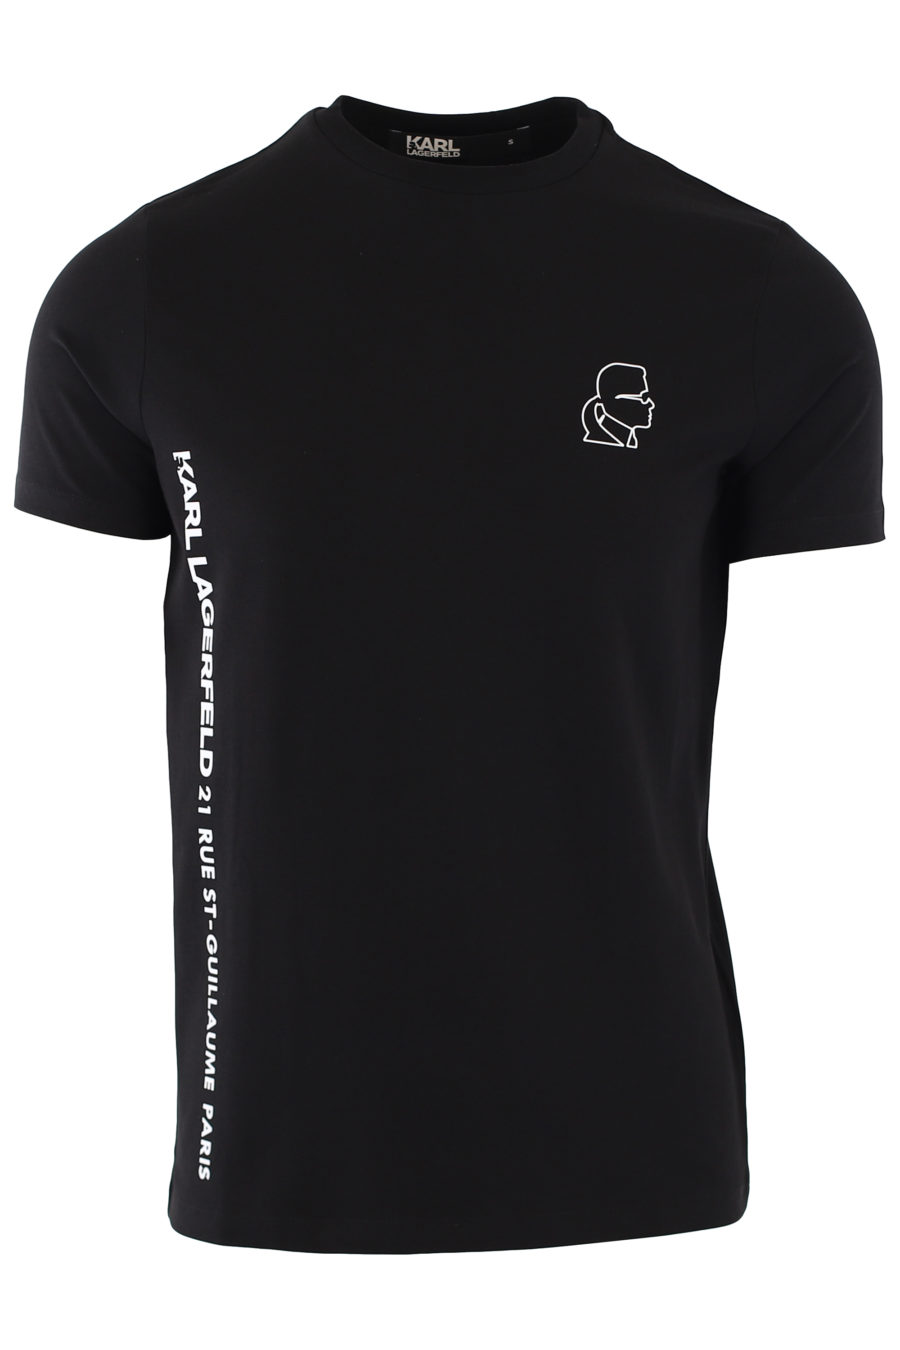 Schwarzes T-Shirt mit kleinem Seitenlogo - IMG 1372